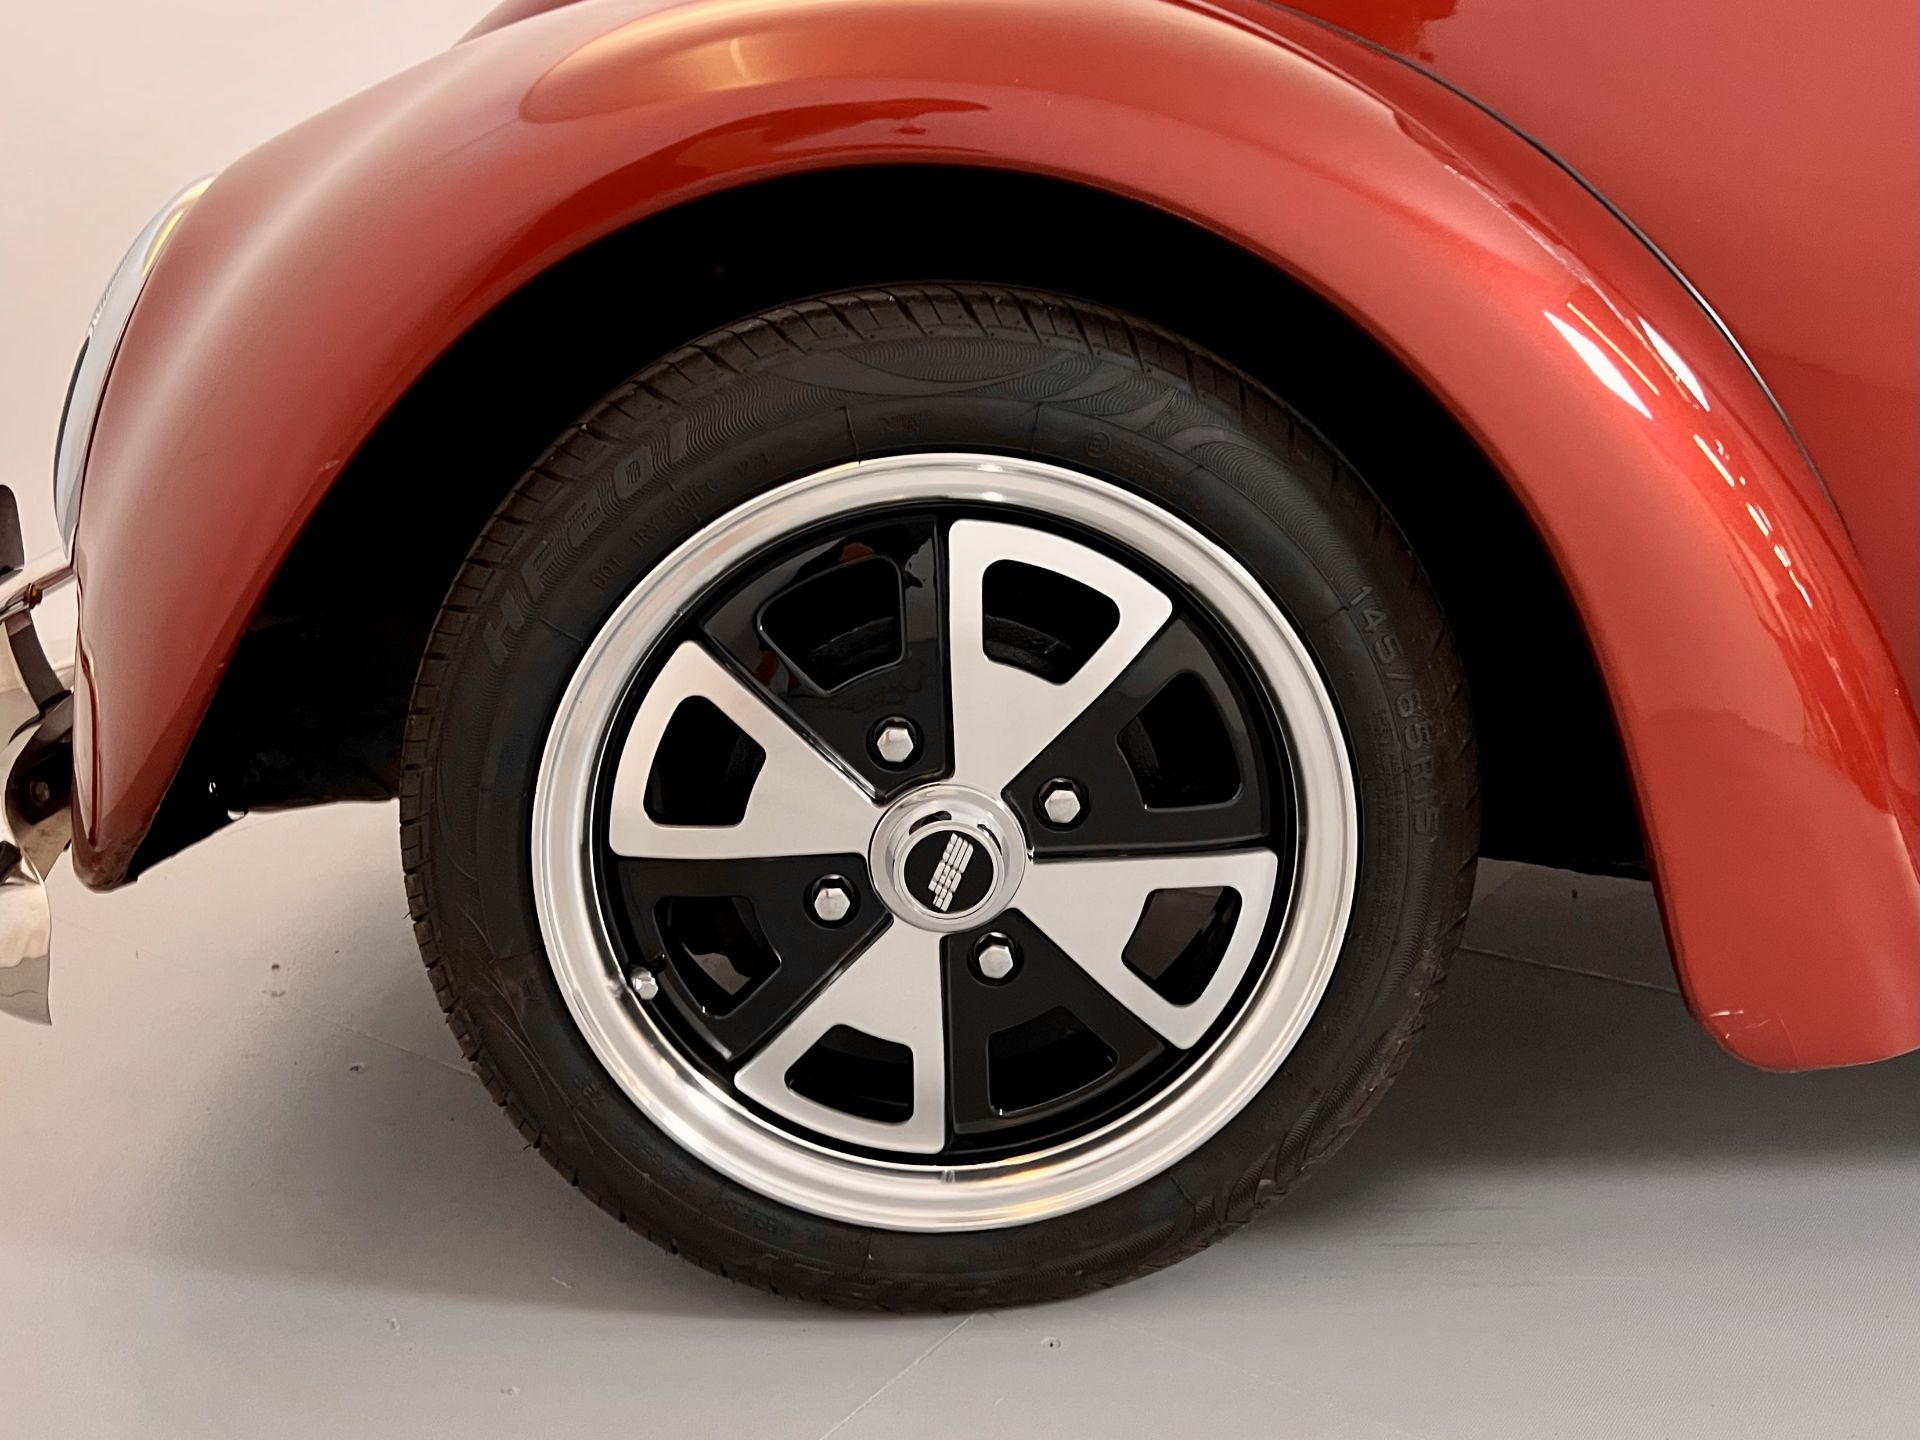 Volkswagen Beetle - Image 16 of 29